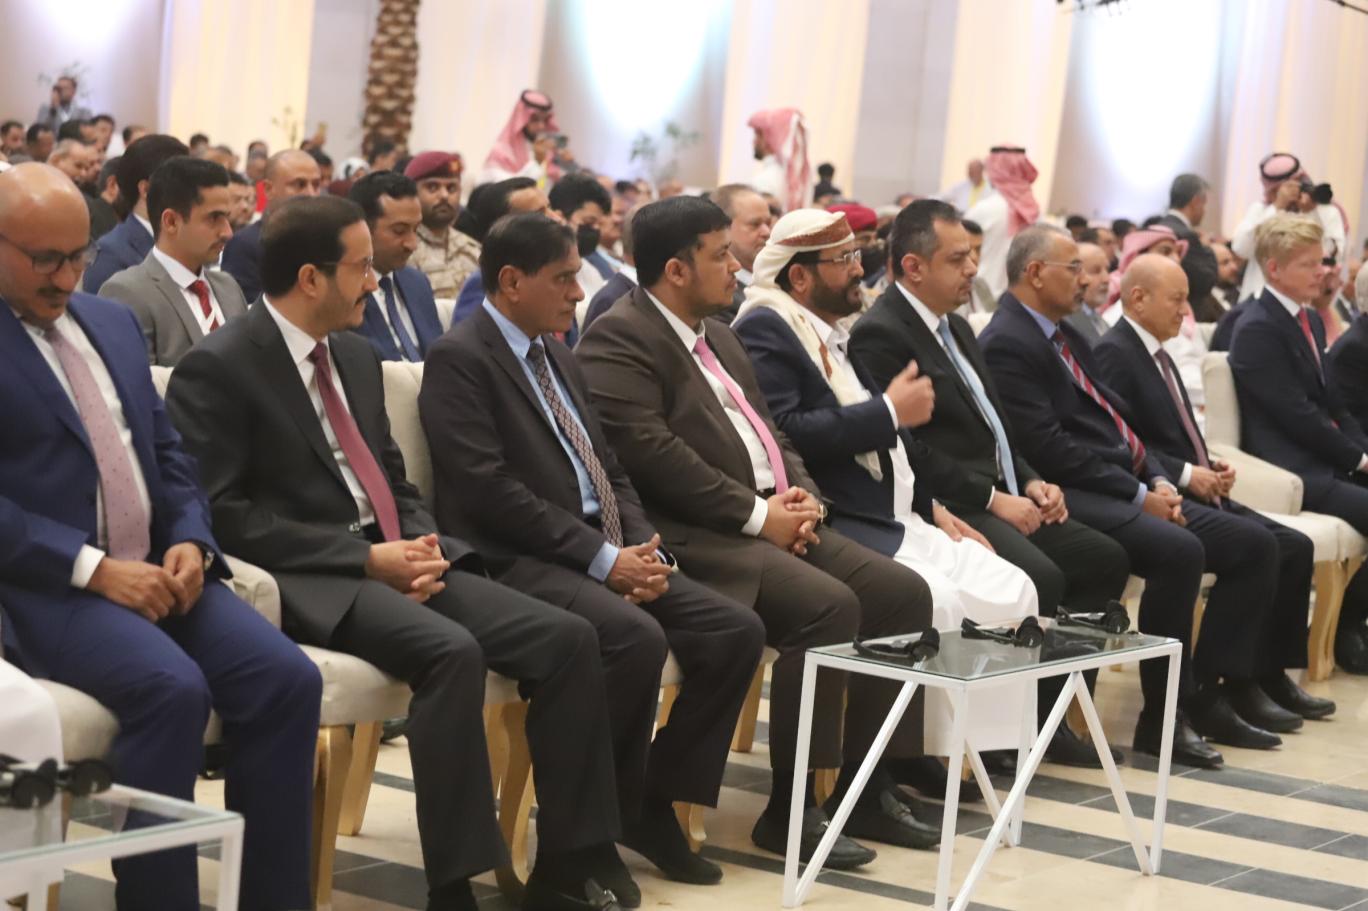 وصل إلى الرياض جميع أعضاء المجلس الرئاسي إلى جانب رؤساء مجالس النواب والشورى والحكومة وعدد من المسؤولين والوزراء ومستشاري رئيس مجلس القيادة رشاد العليمي (اندبندنت عربية)